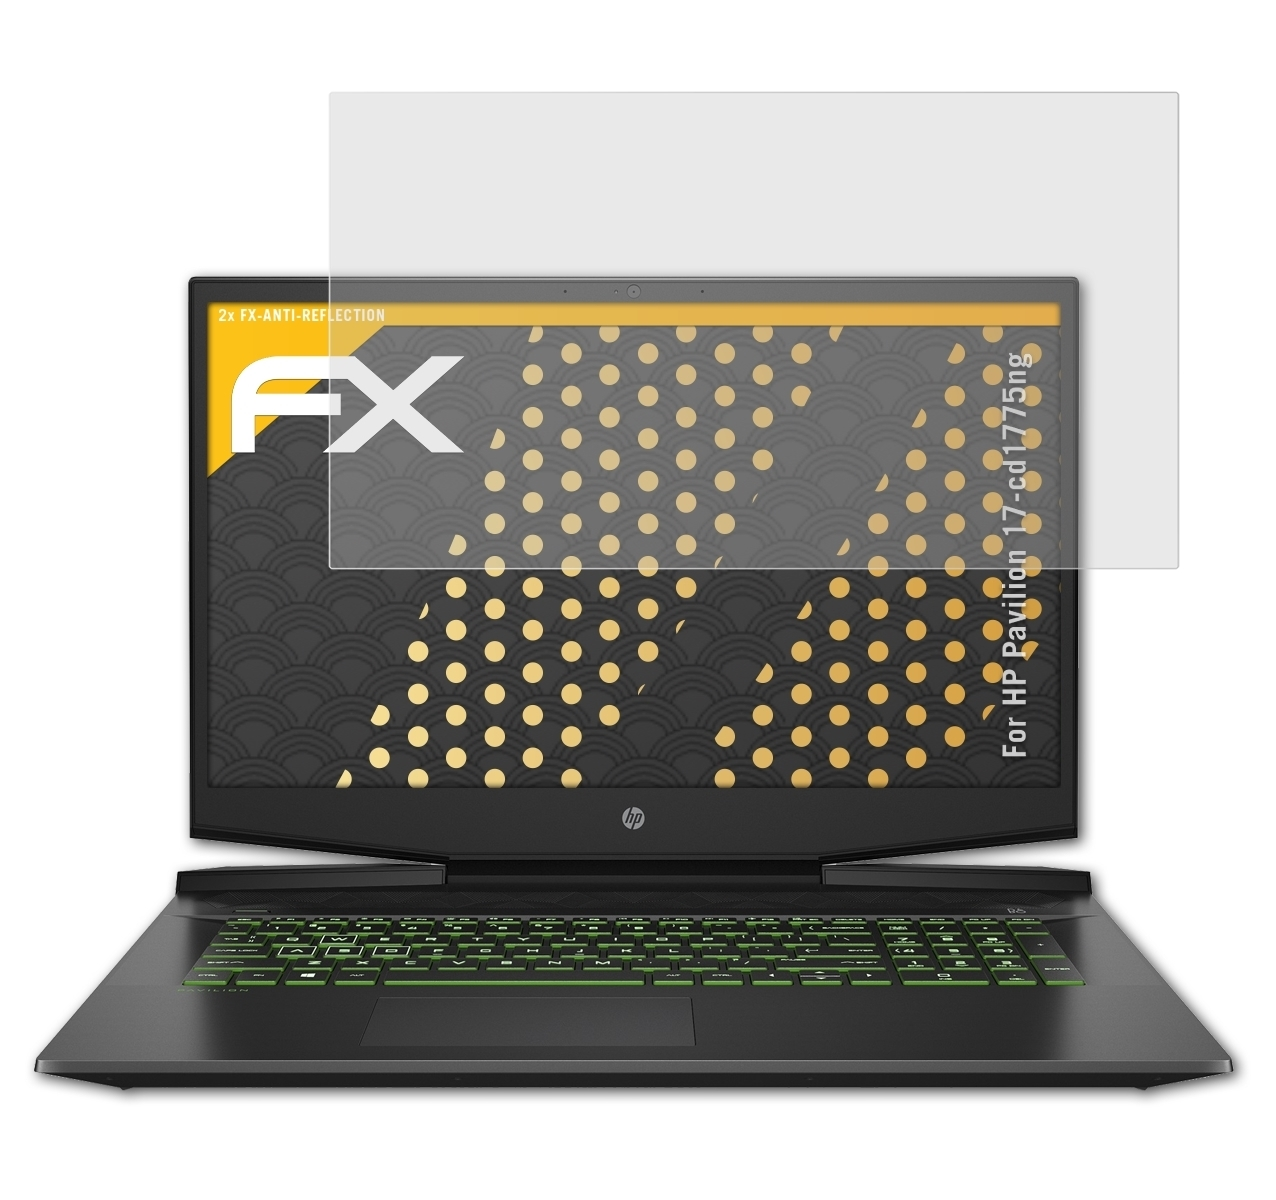 FX-Antireflex Displayschutz(für HP ATFOLIX 17-cd1775ng) 2x Pavilion